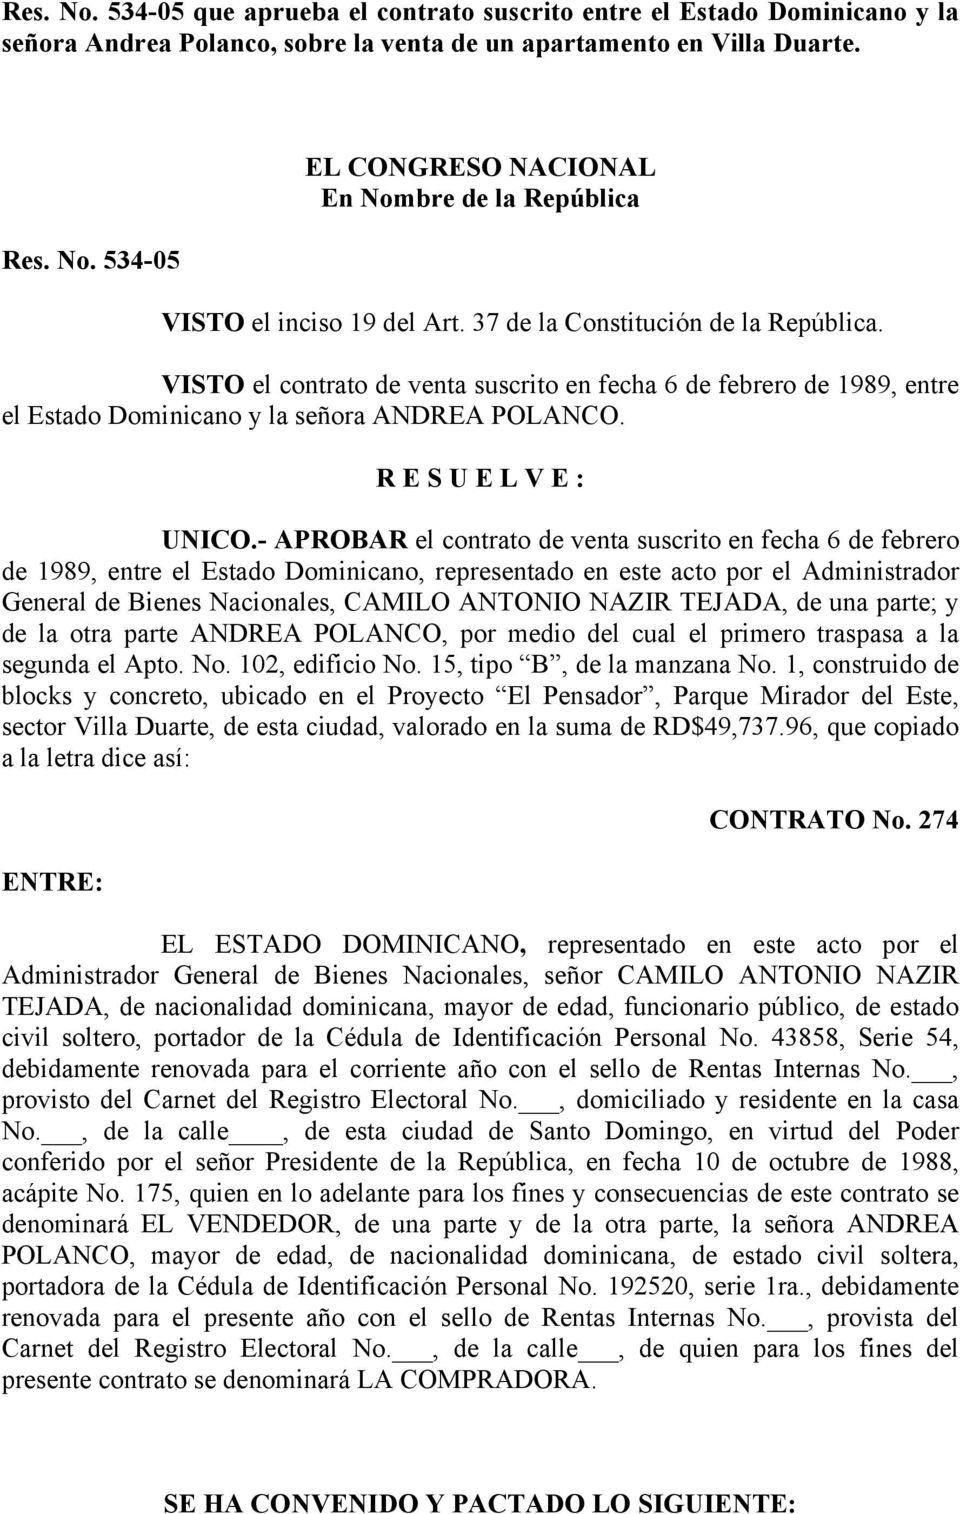 - APROBAR el contrato de venta suscrito en fecha 6 de febrero de 1989, entre el Estado Dominicano, representado en este acto por el Administrador General de Bienes Nacionales, CAMILO ANTONIO NAZIR